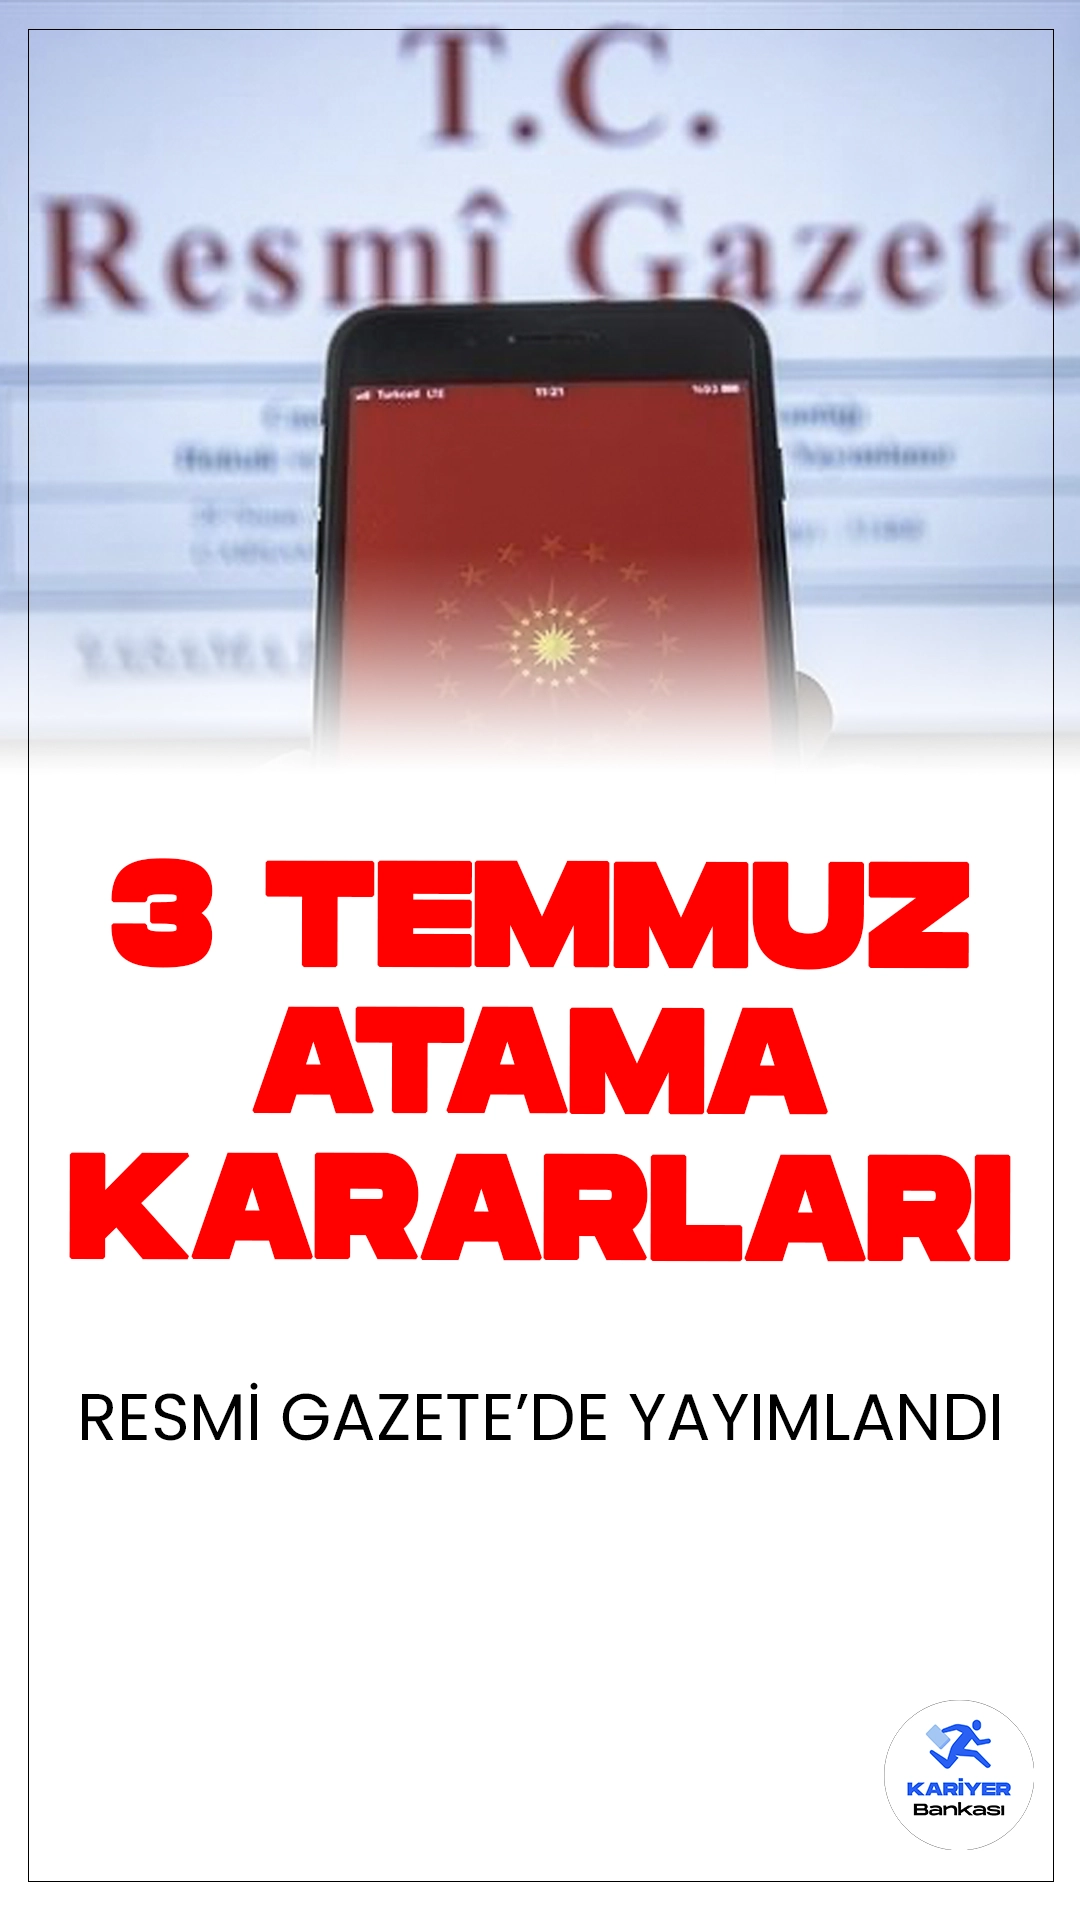 Atama ve Görevden Alma Kararları Resmi Gazete'de Yayımlandı.Cumhurbaşkanı Recep Tayyip Erdoğan'ın imzasıyla yayımlanan atama ve görevden alma kararları, Resmi Gazete'de yer aldı.